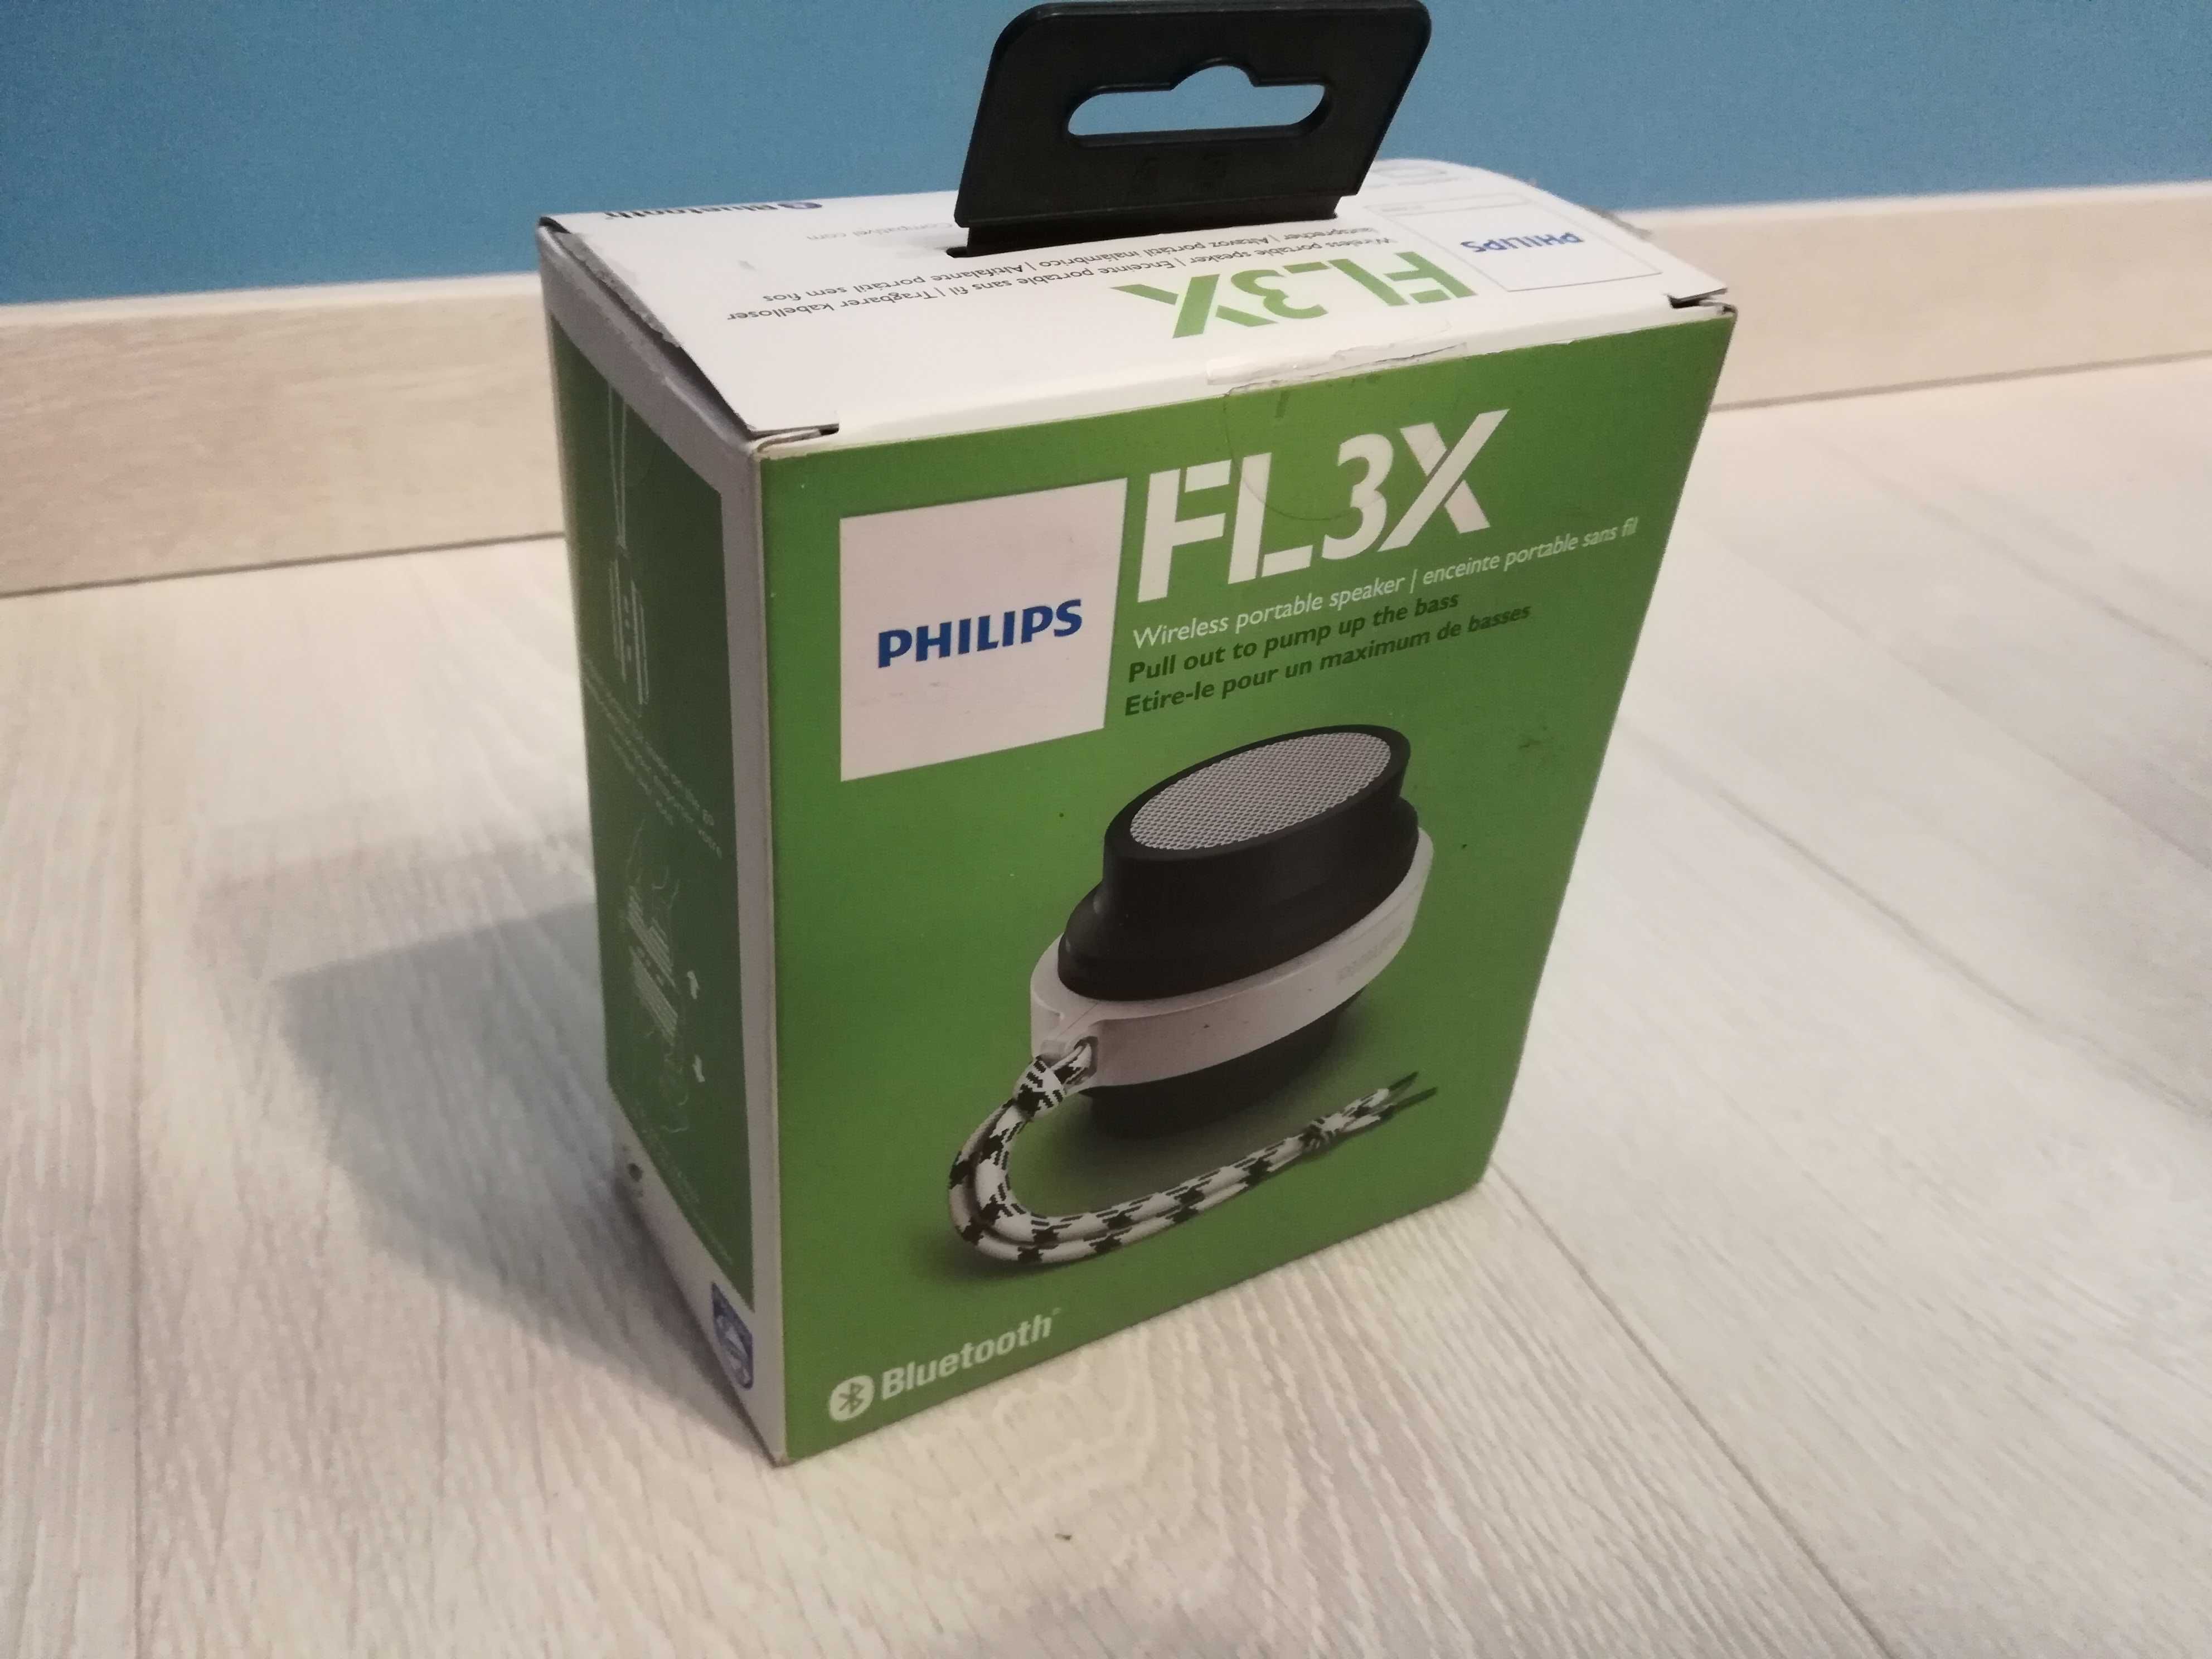 Bezprzewodowy głośnik Philips FL3X